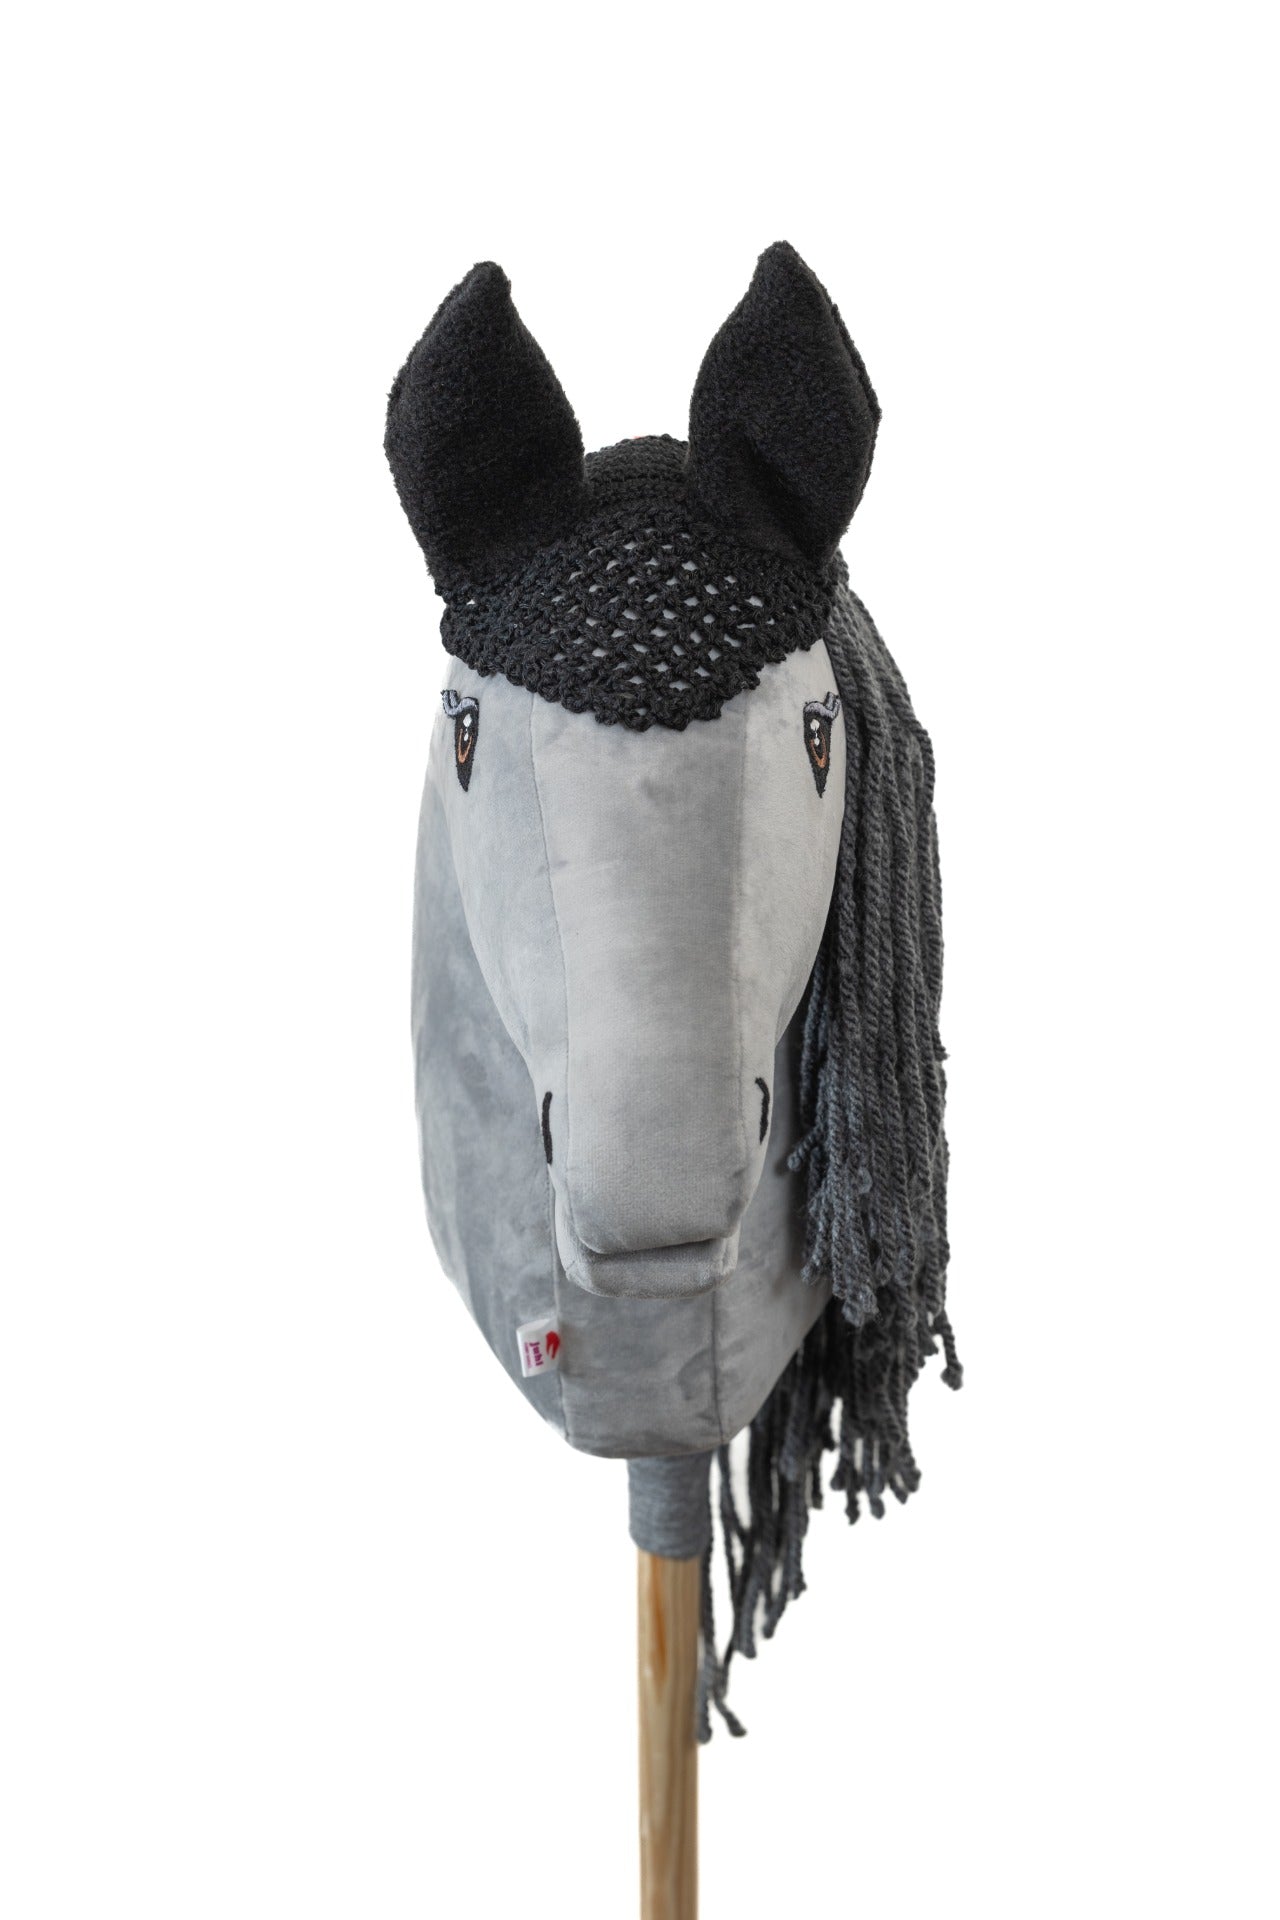 Ear net crocheted - Black - Foal